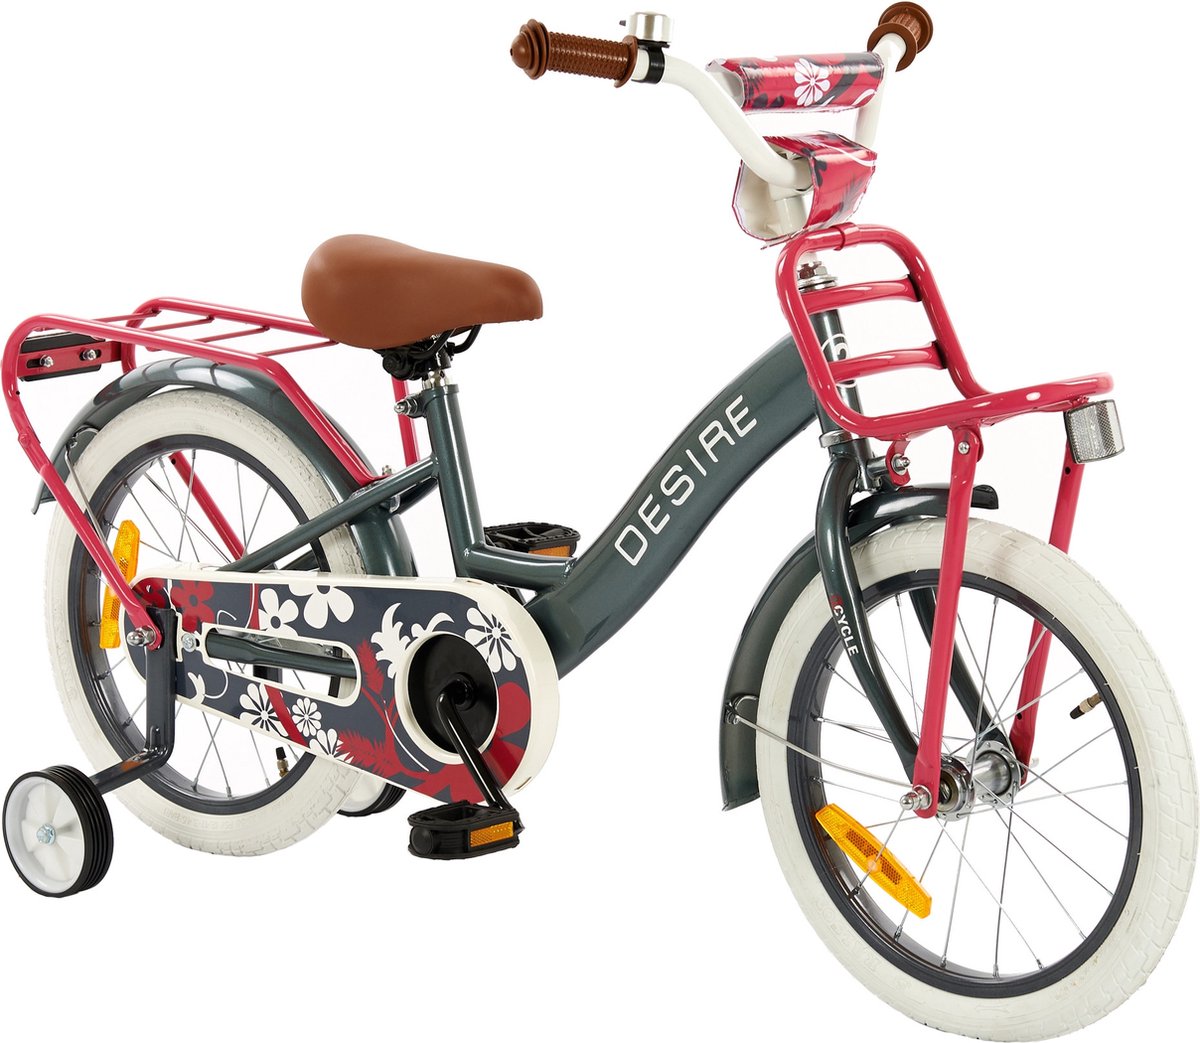 2Cycle Desire - Kinderfiets - 16 inch - Grijs-Roze - Meisjesfiets - 16 inch fiets